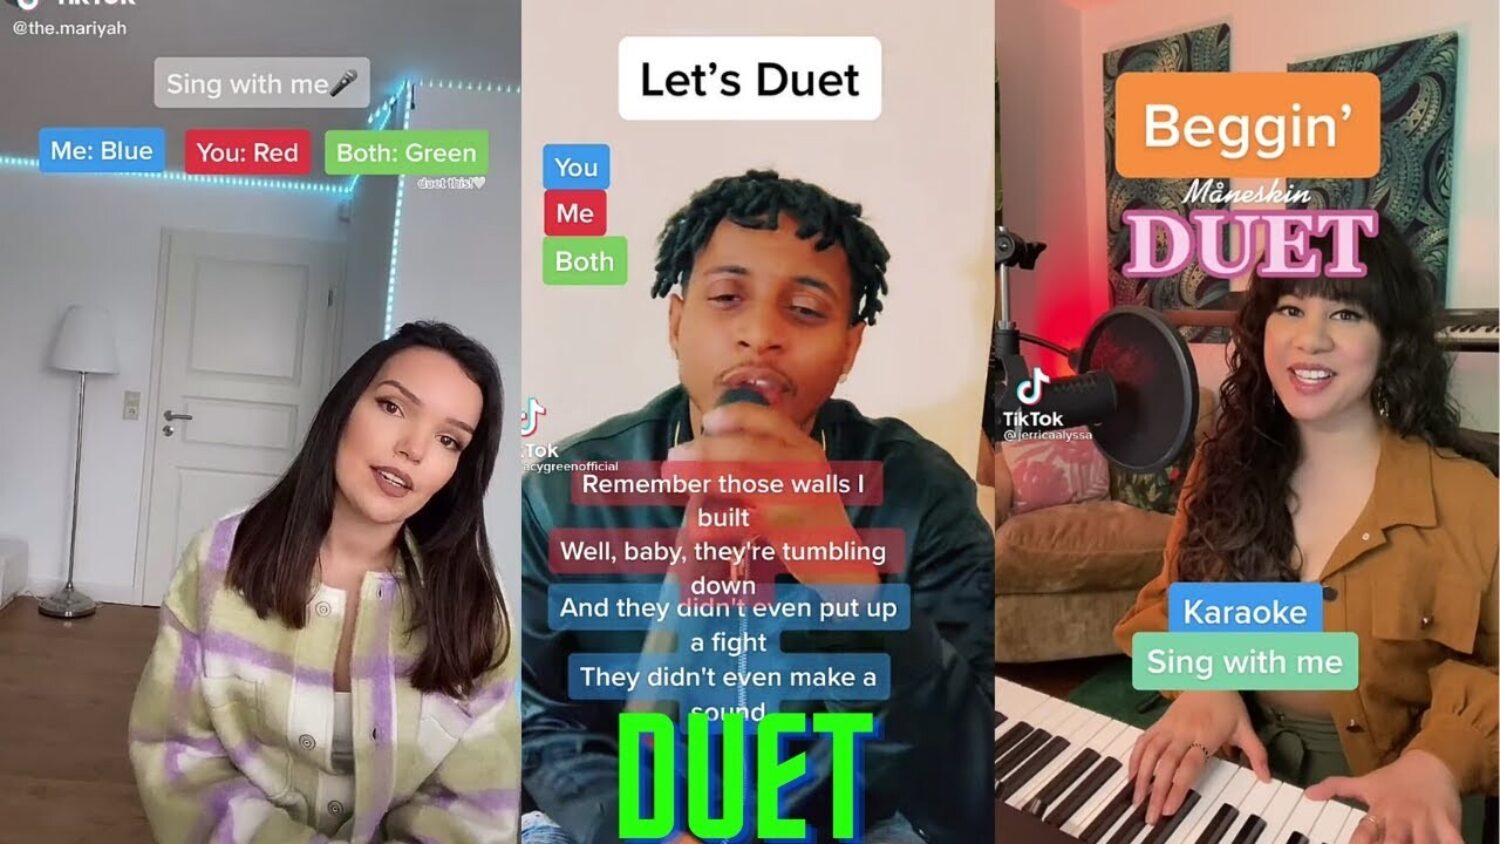 Tiktok duet music challenge